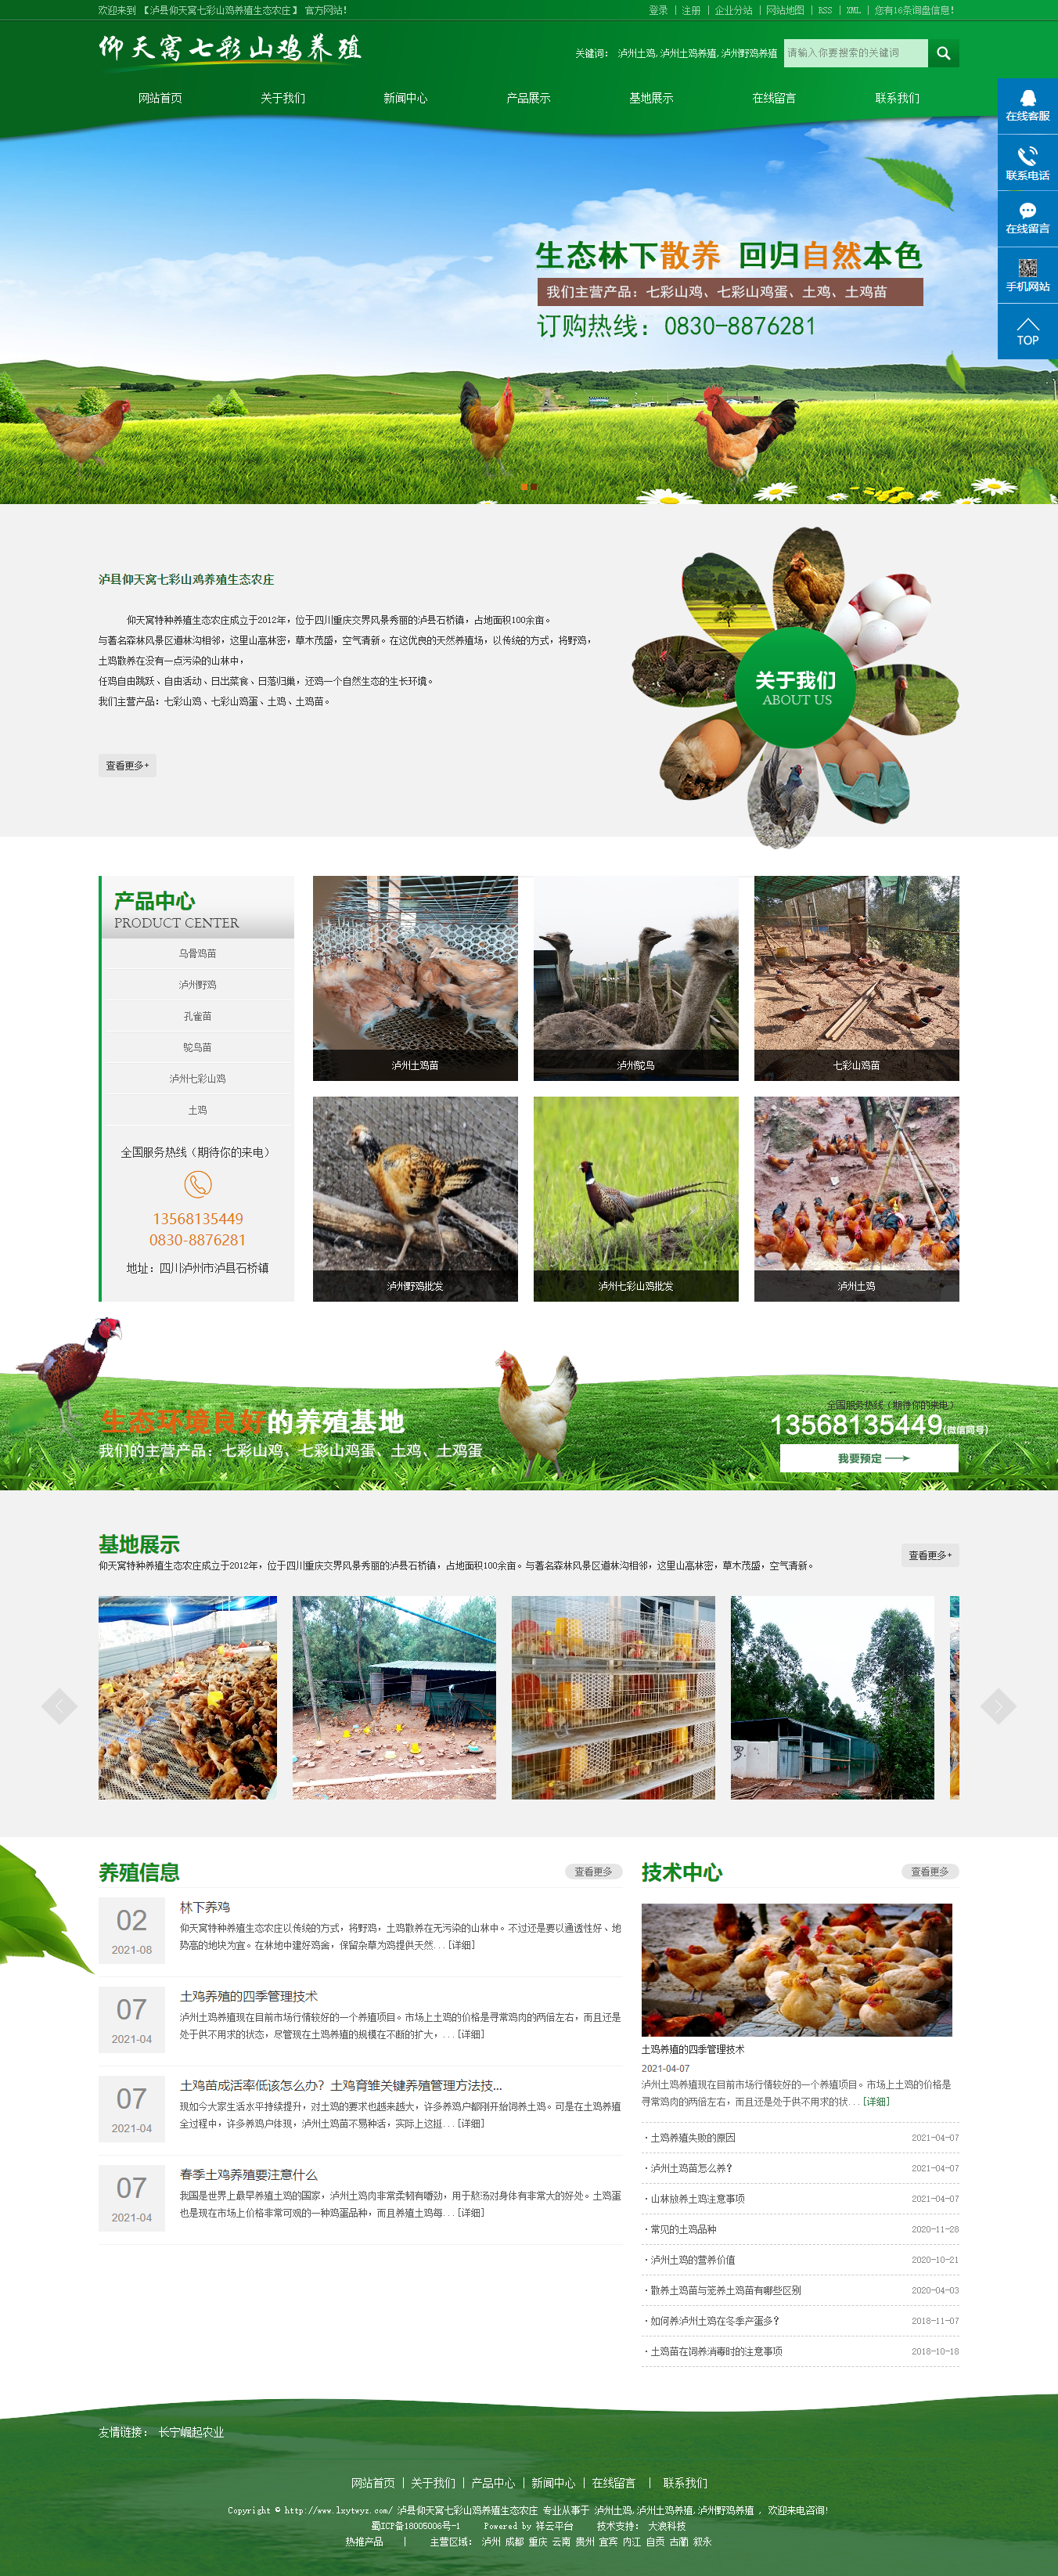 泸县仰天窝七彩山鸡养殖生态农庄网站案例